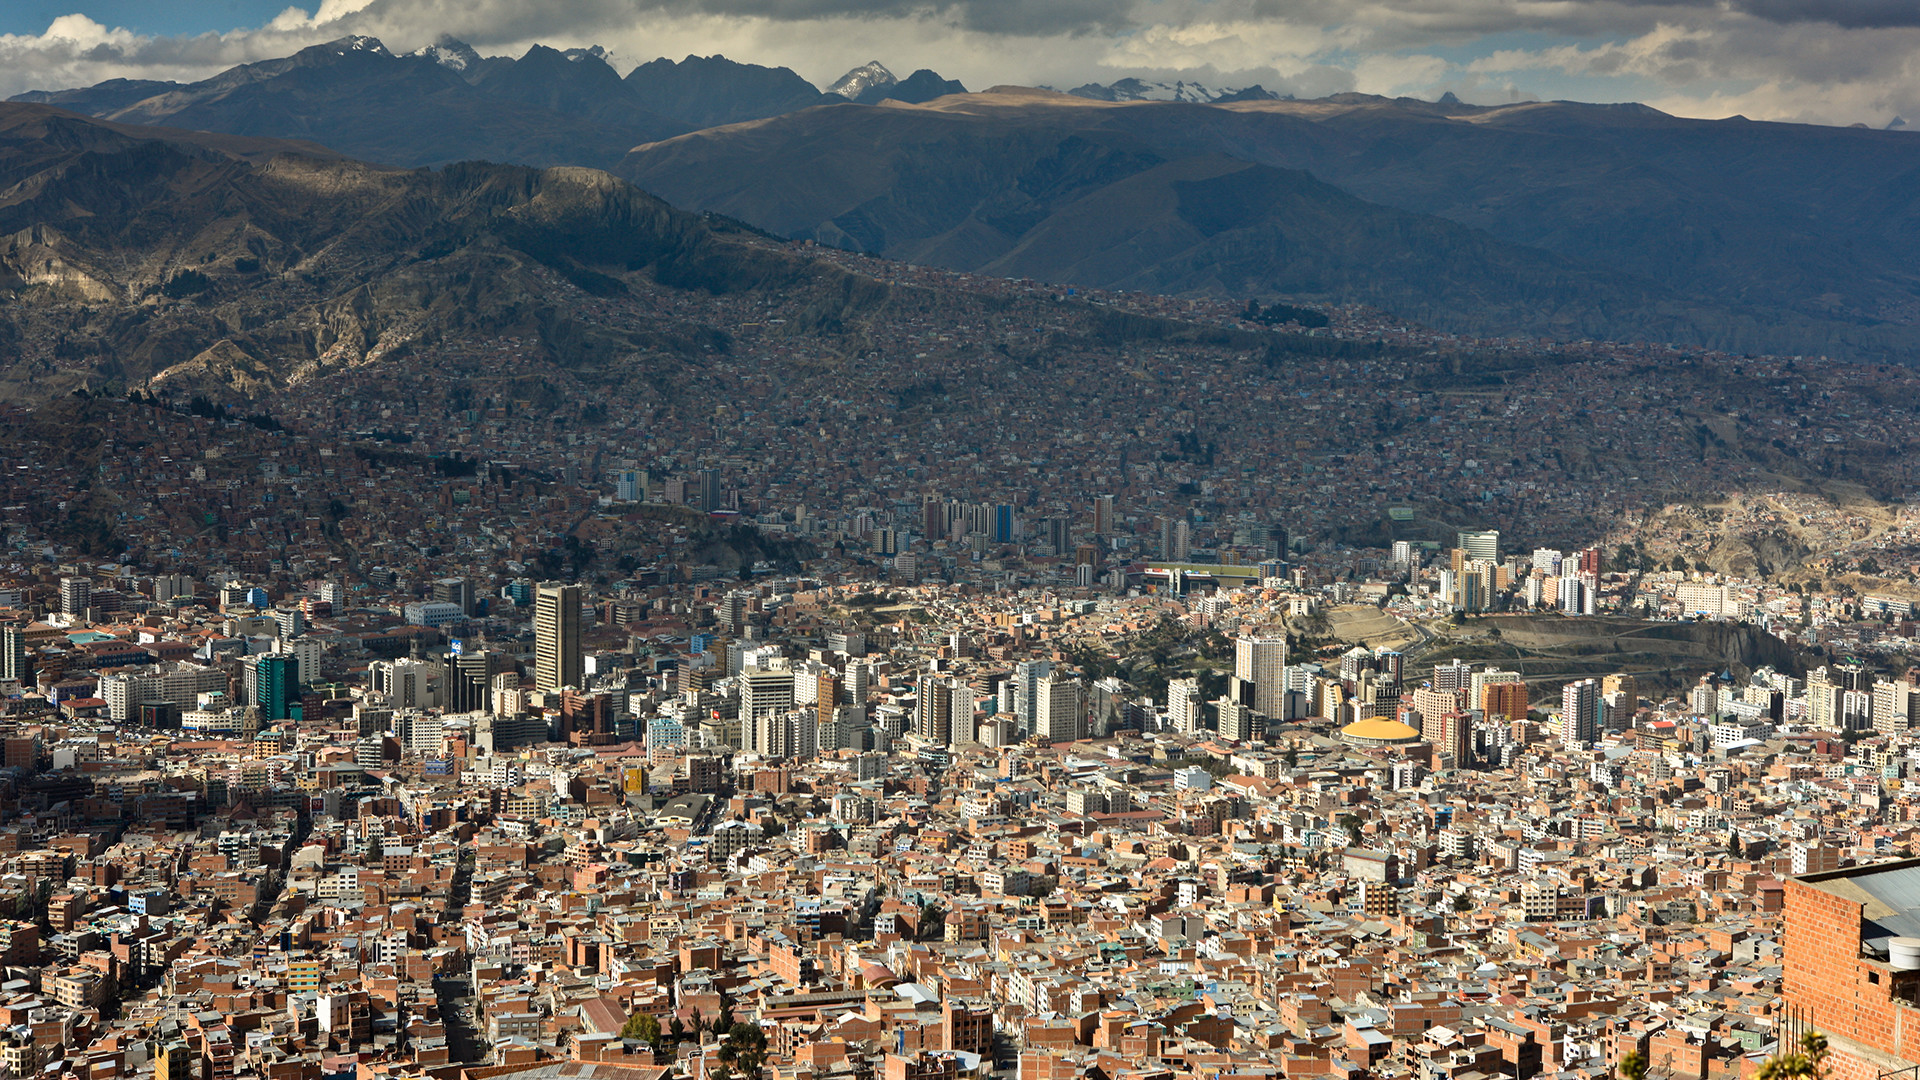 A La Paz, le pape visitera la cathédrale et rencontrera des organisations syndicales (Photo: flickr/cliffhellis/CC BY-NC-ND 2.0)